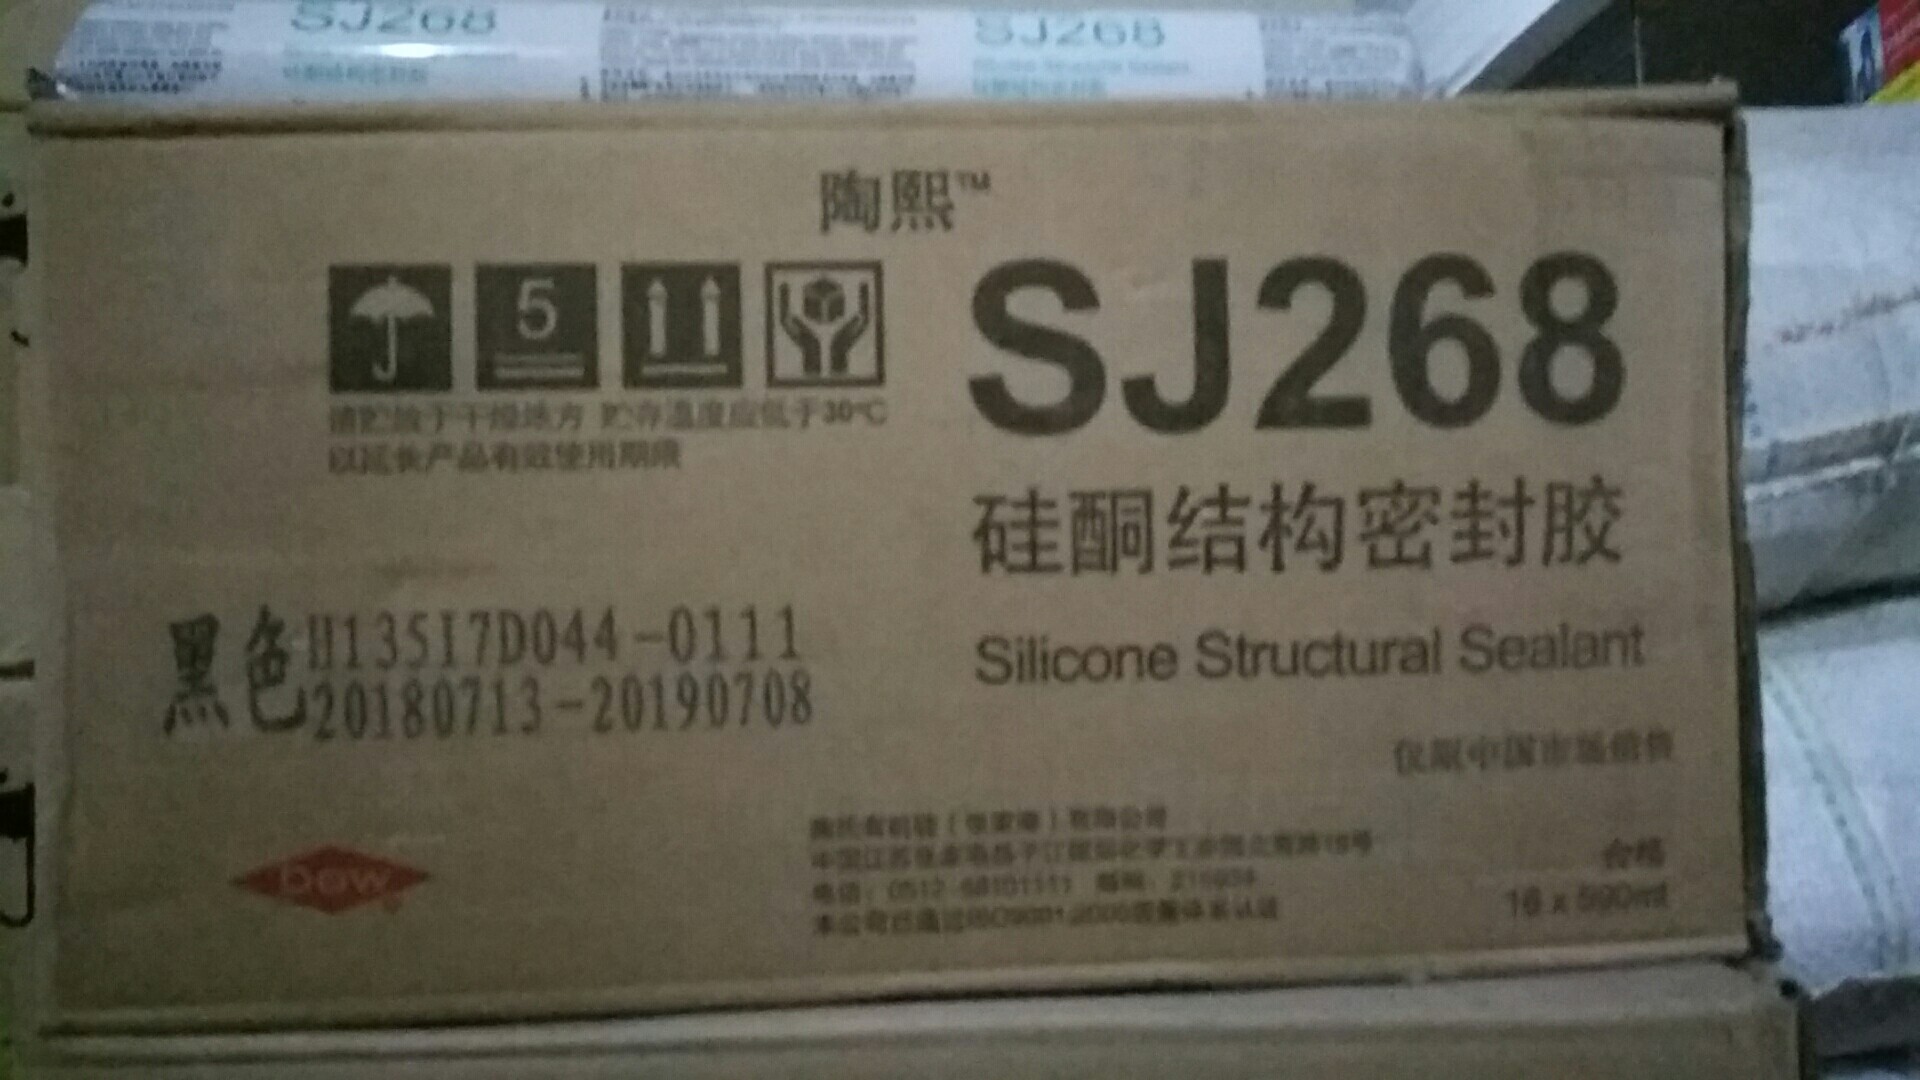 深圳市道康宁SJ268硅酮结构胶厂家